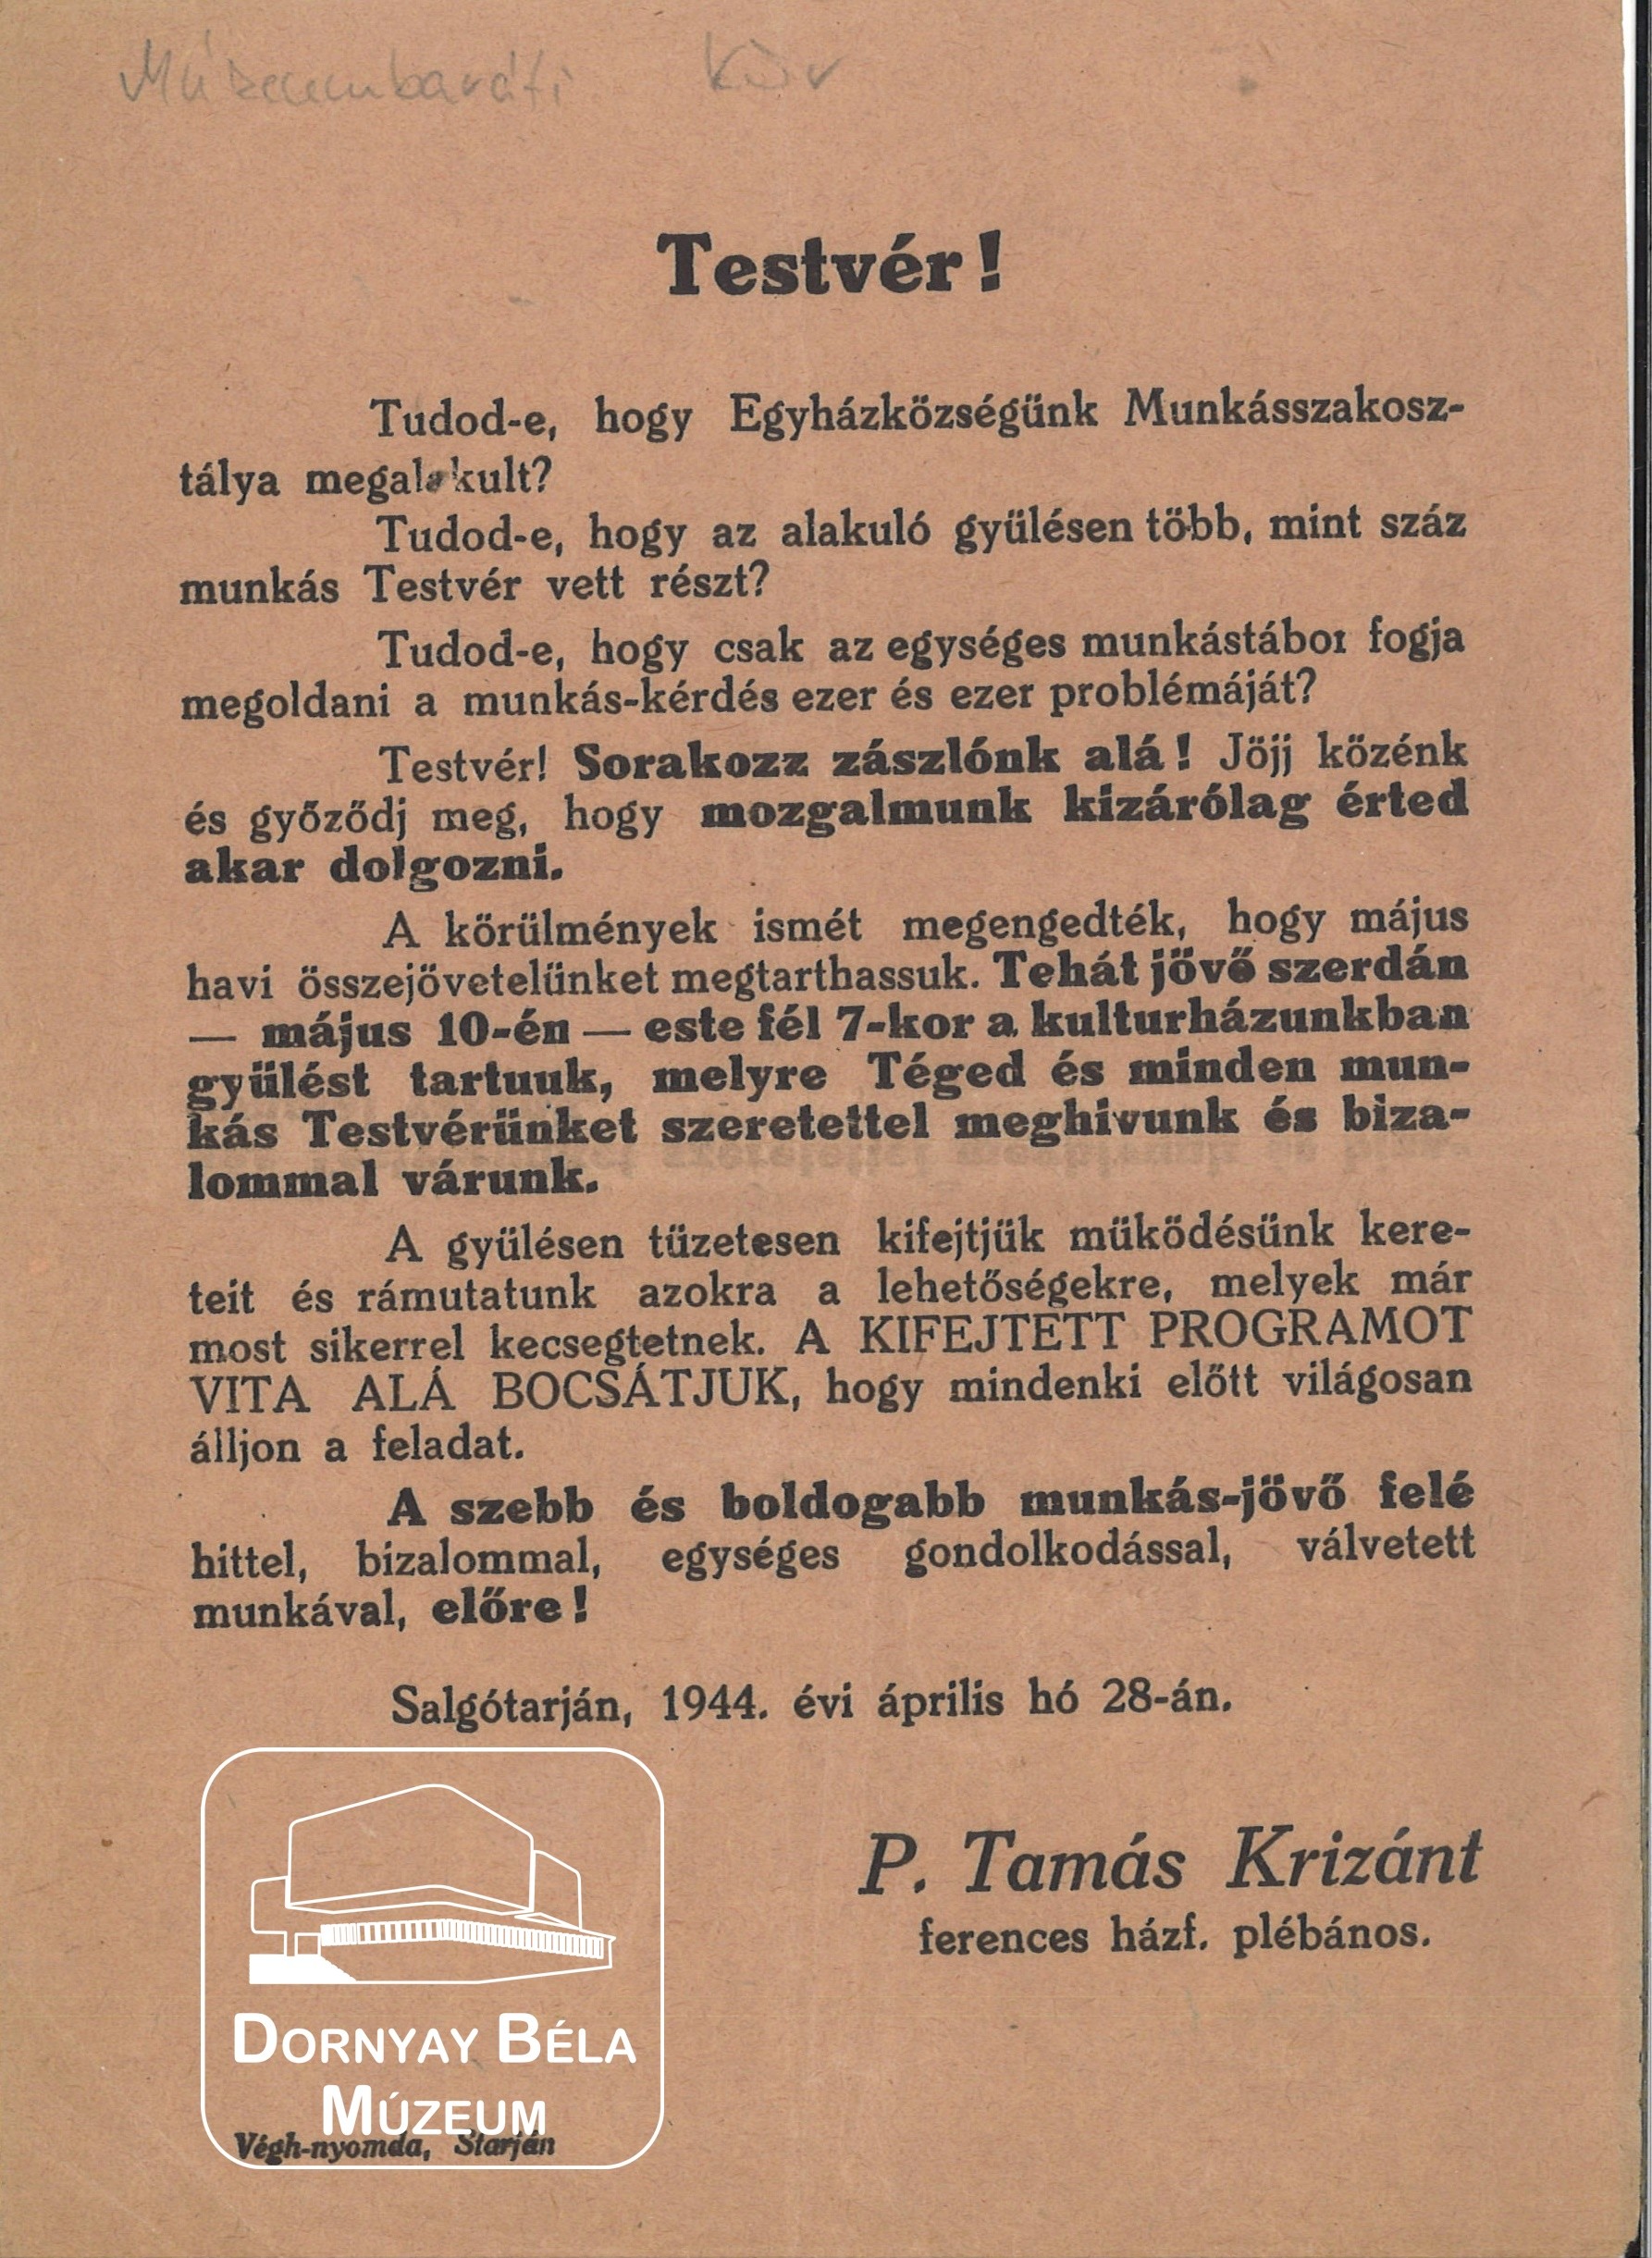 P. Tamás Krizánt ferences házf.plébános felhívása, május 10-én tartandó gyűlésére (Dornyay Béla Múzeum, Salgótarján CC BY-NC-SA)